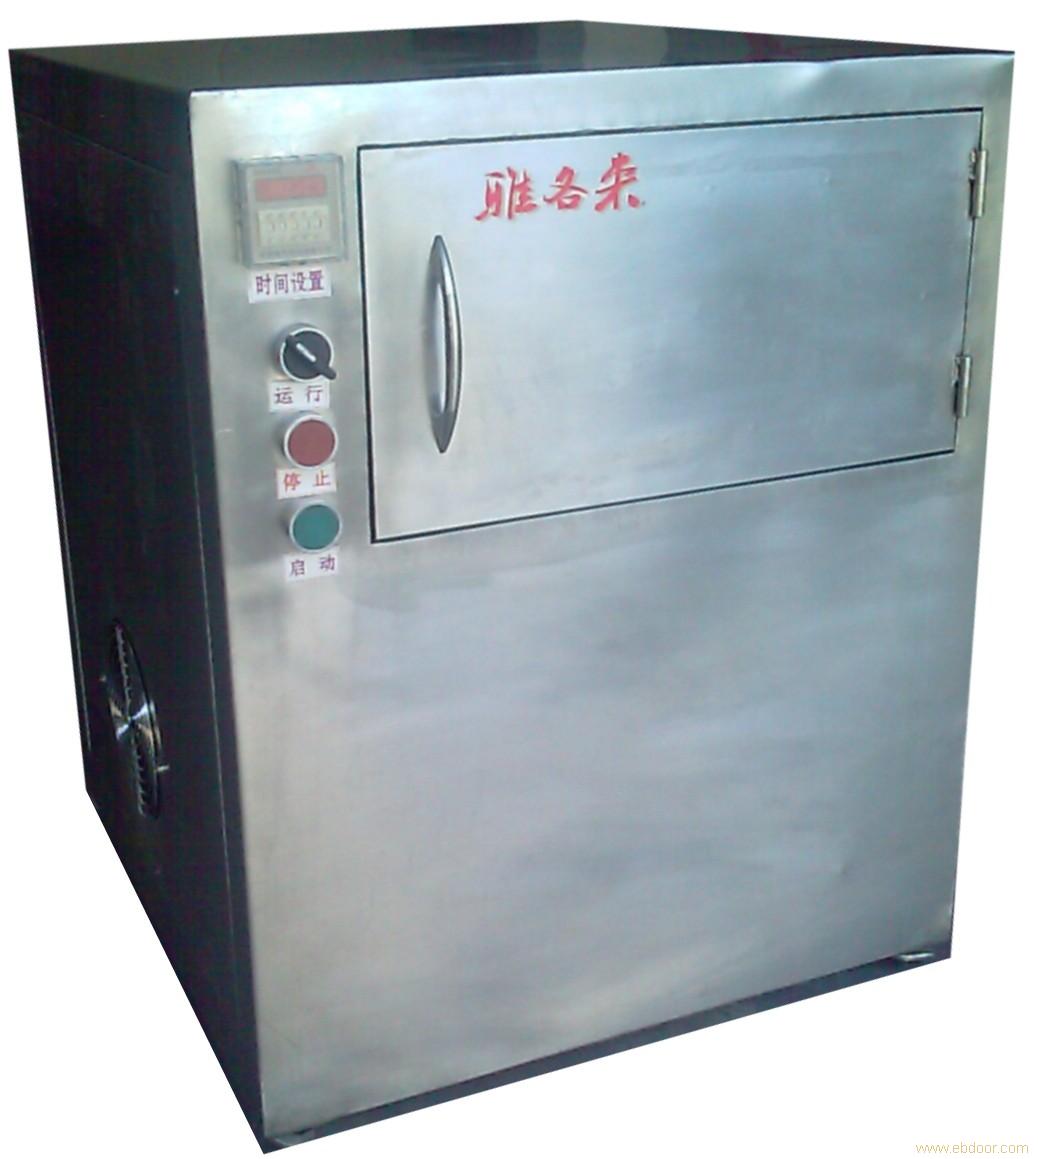 上海电磁炉加热设备